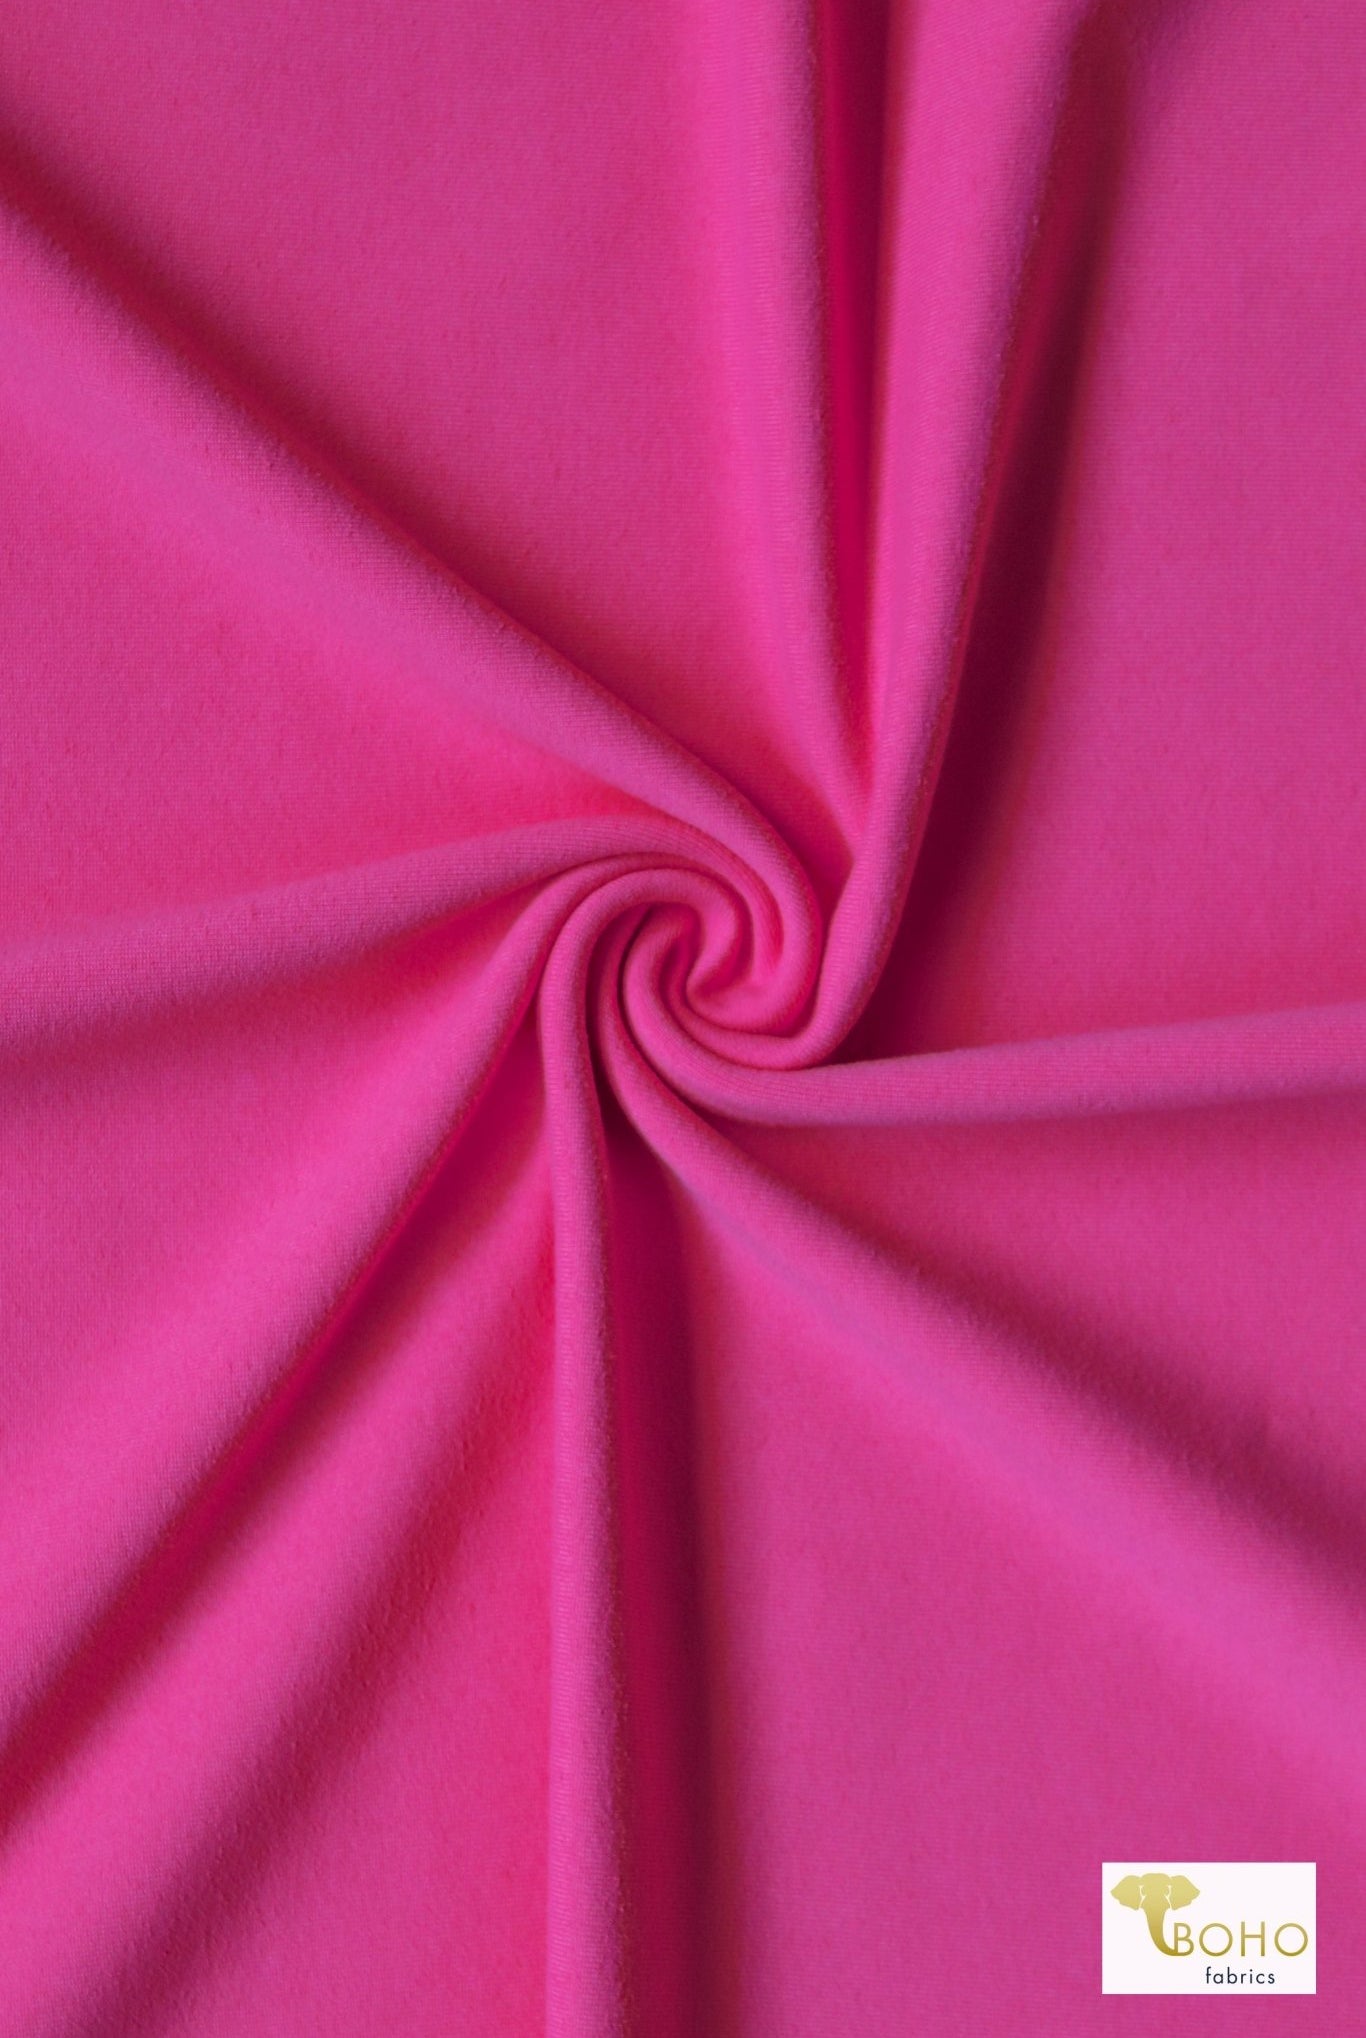 Cosmic Pink, Athletic Fabric - Boho Fabrics